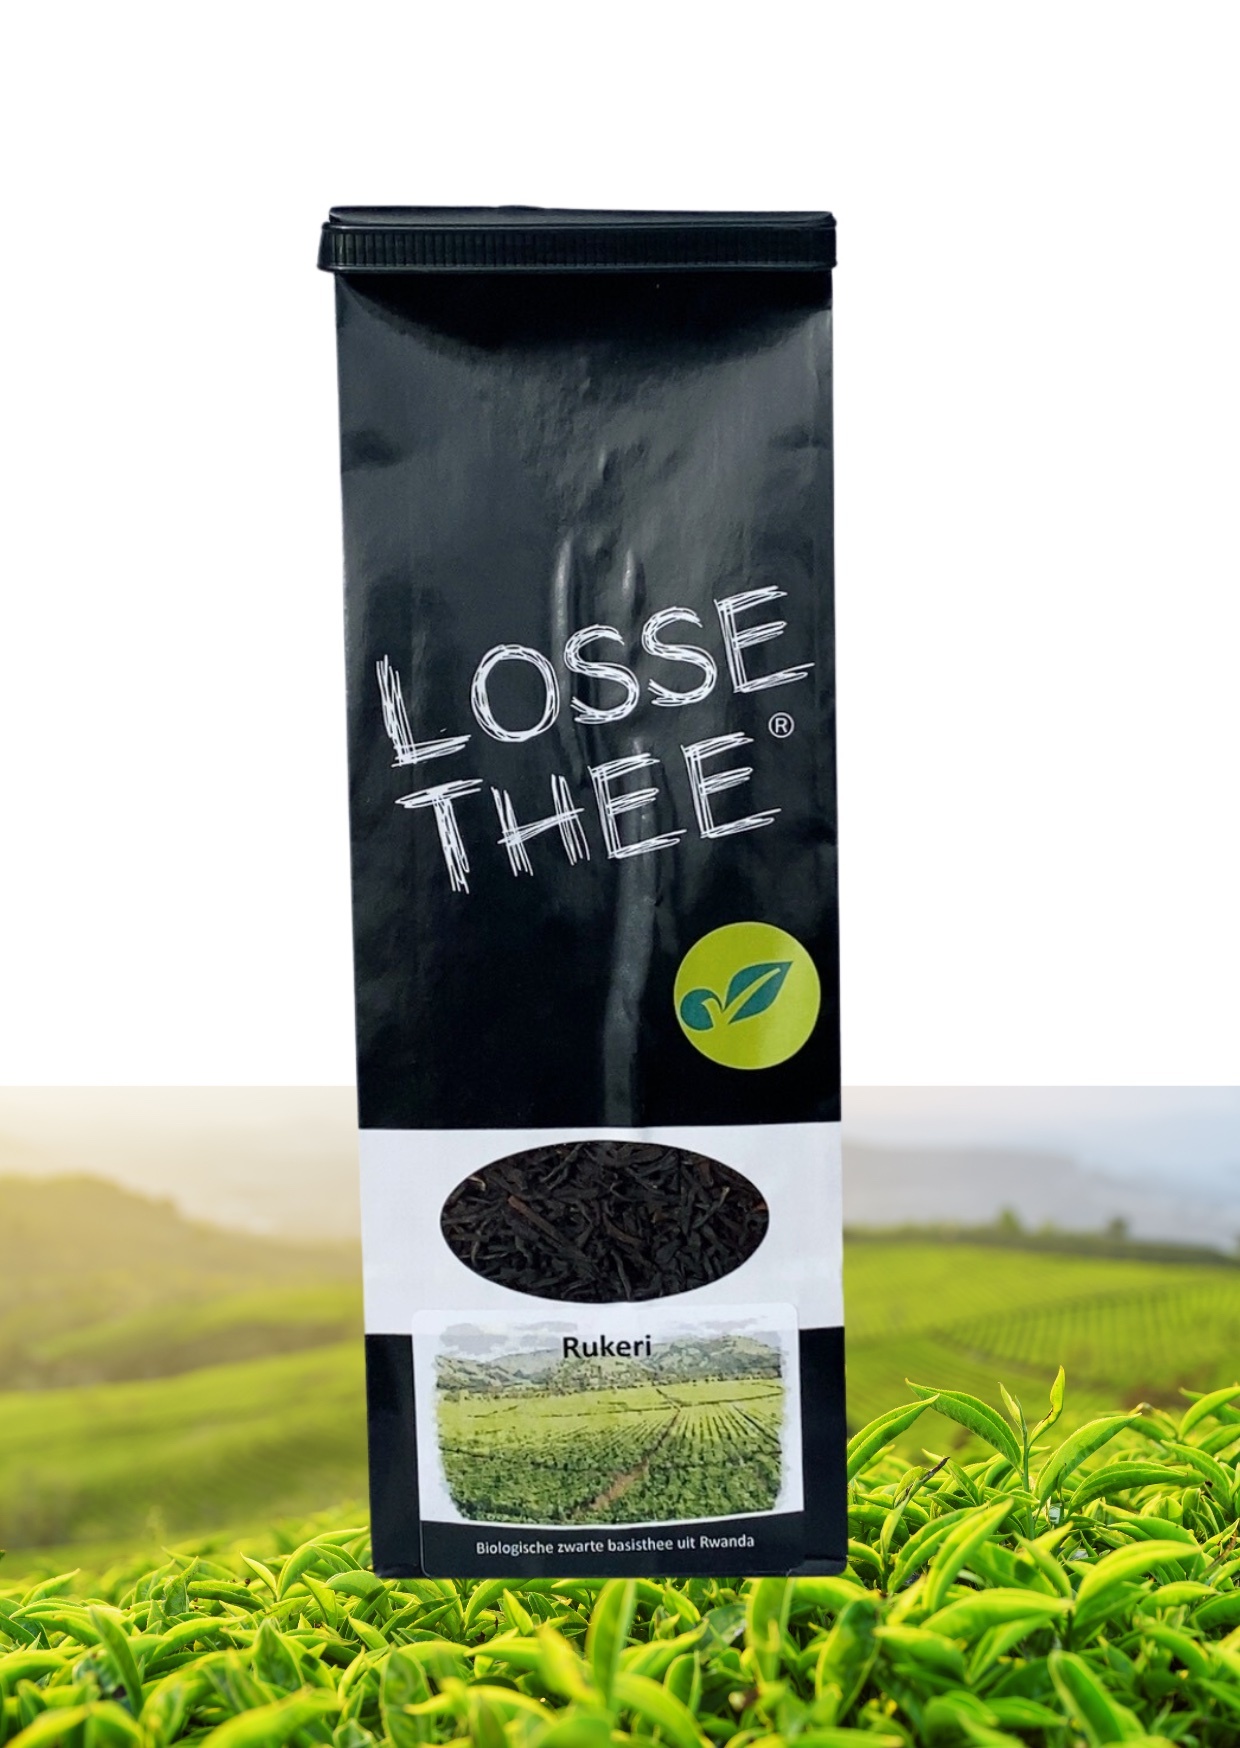 LOSSE THEE Rukeri biologische zwarte basis thee uit Rwanda